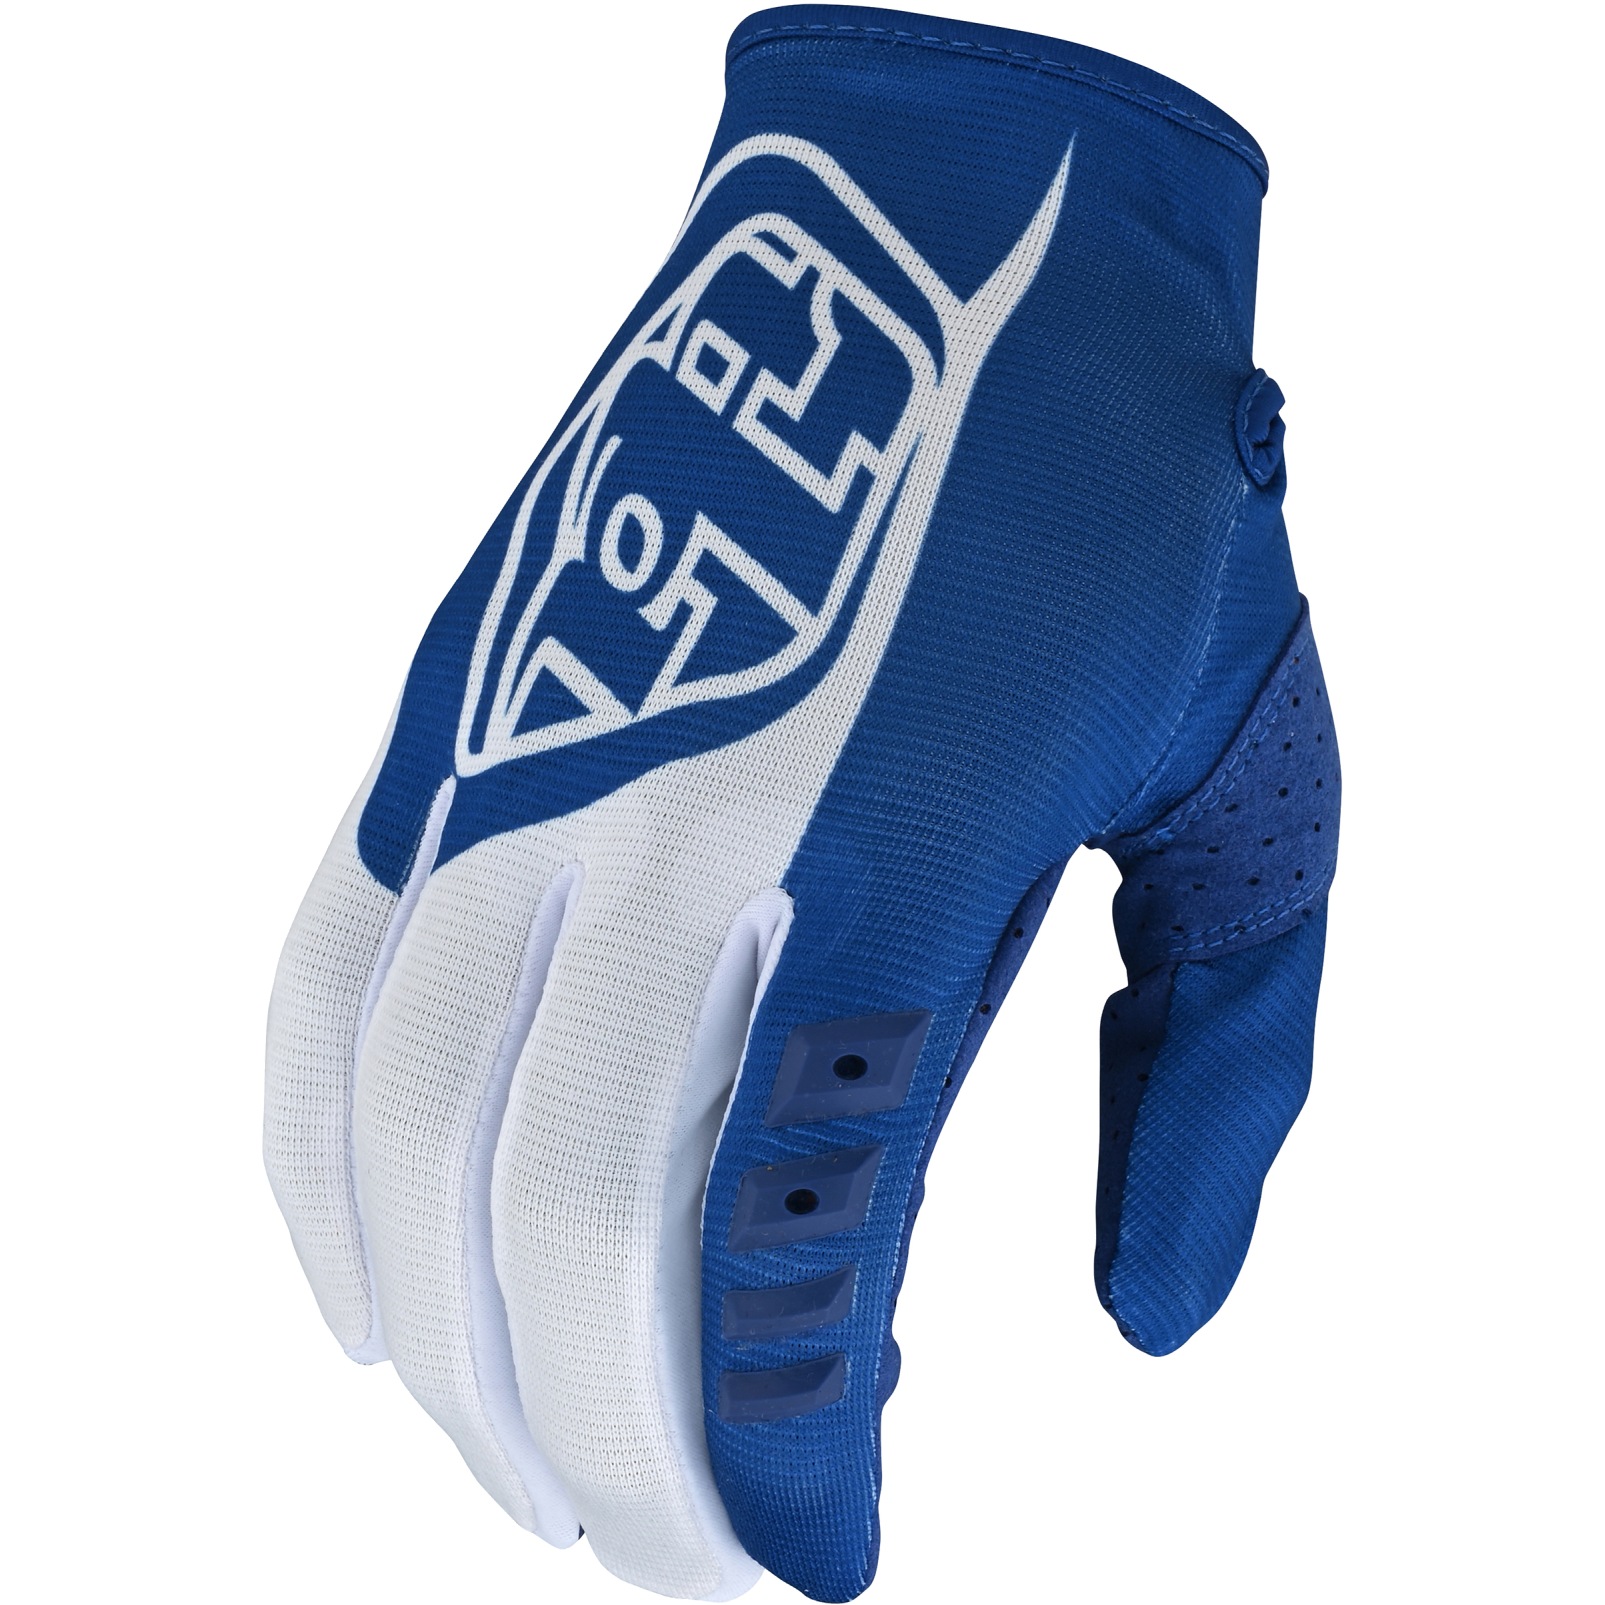 Produktbild von Troy Lee Designs GP Handschuhe - Blau